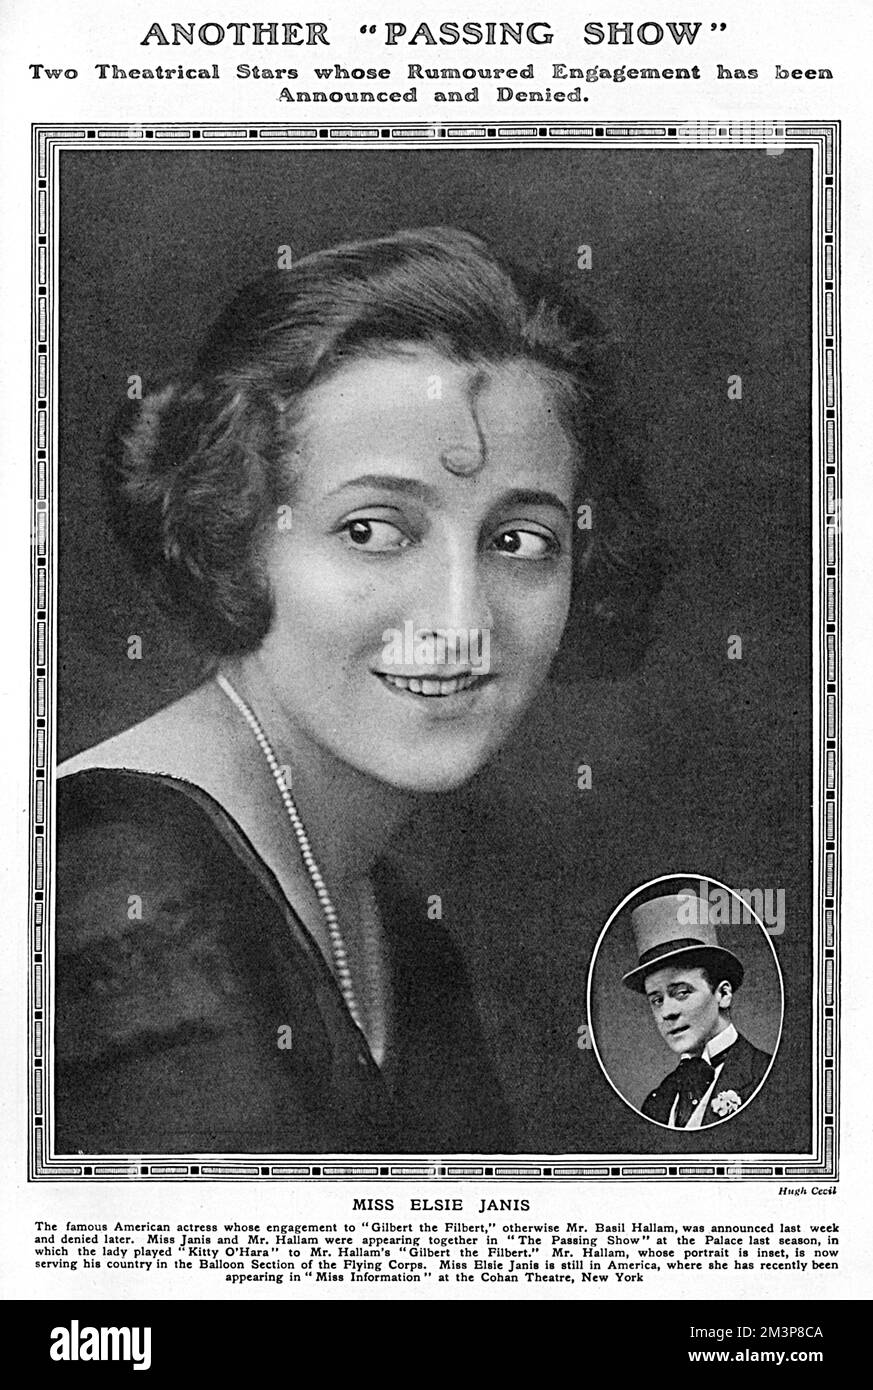 Elsie Janis (26 février 1956 16 mars 1889), chanteuse américaine, auteur-compositeur, actrice, et scénariste. Divertir les troupes pendant la première Guerre mondiale l'a immortalisée comme "l'aimée de l'AEF" (American Expeditionary Force). Inset est une photo de Basil Hallam, né Basil Hallam Radford (1889-1916), acteur et chanteur anglais, plus connu pour son rôle de Gilbert le Filbert, colonel des noix dans la revue 1915, The Passing Show. Basil rejoint le Royal Flying corps dans la section de ballon de cerf-volant de l'Armée. Il est mort en août 1916 alors que son ballon dérive vers les lignes ennemies et son parachute soit Banque D'Images